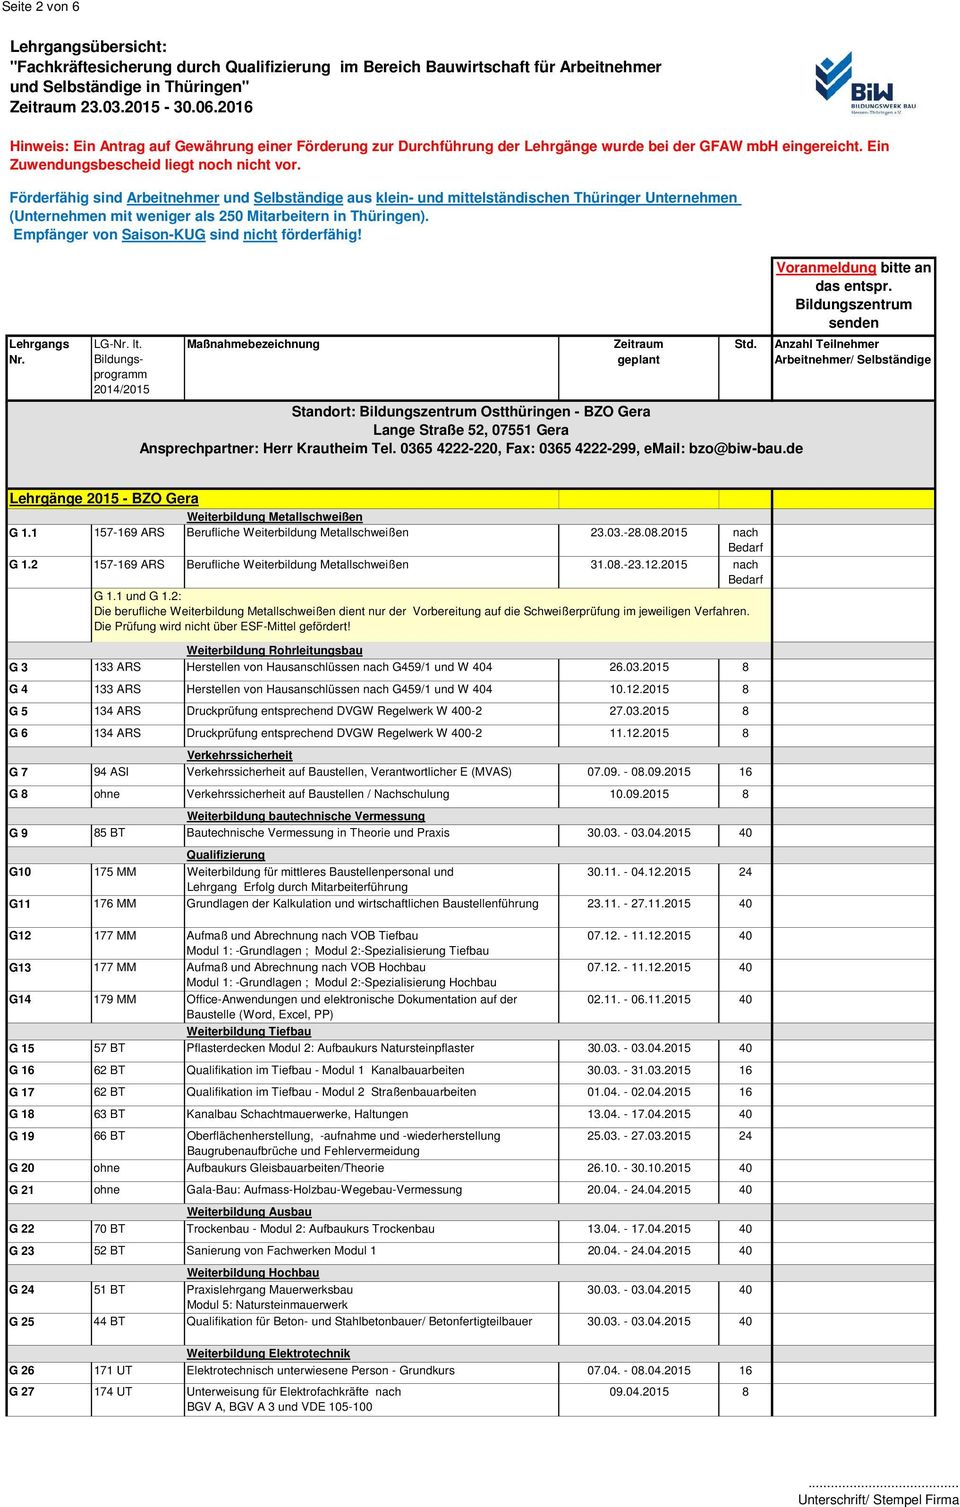 2 157-169 ARS Berufliche Weiterbildung Metallschweißen 31.08.-23.12.2015 nach G 1.1 und G 1.